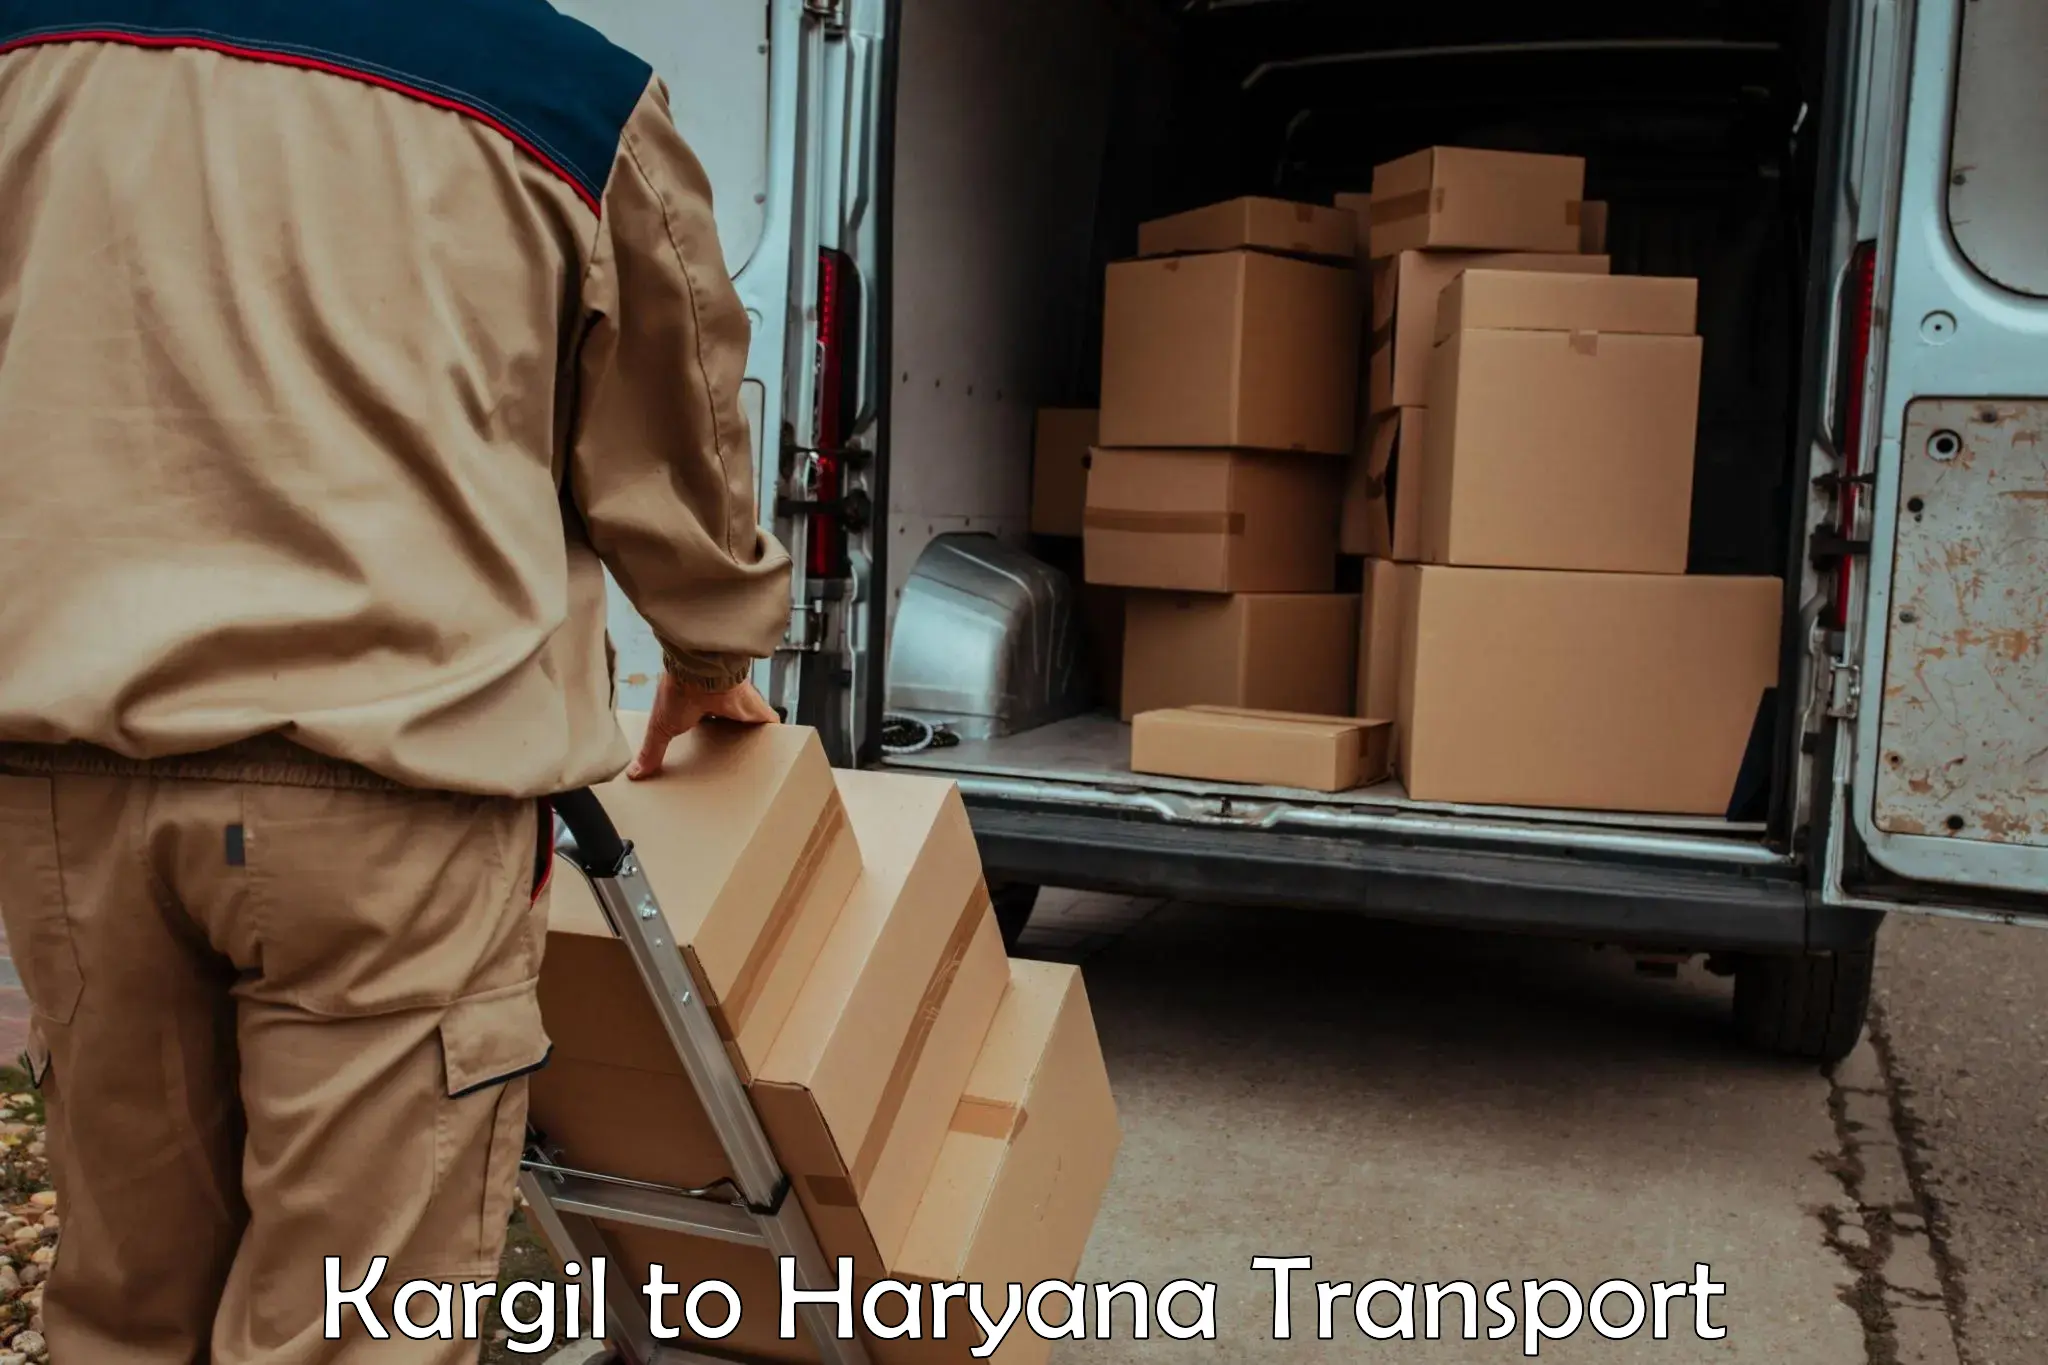 Vehicle transport services Kargil to Bhiwani